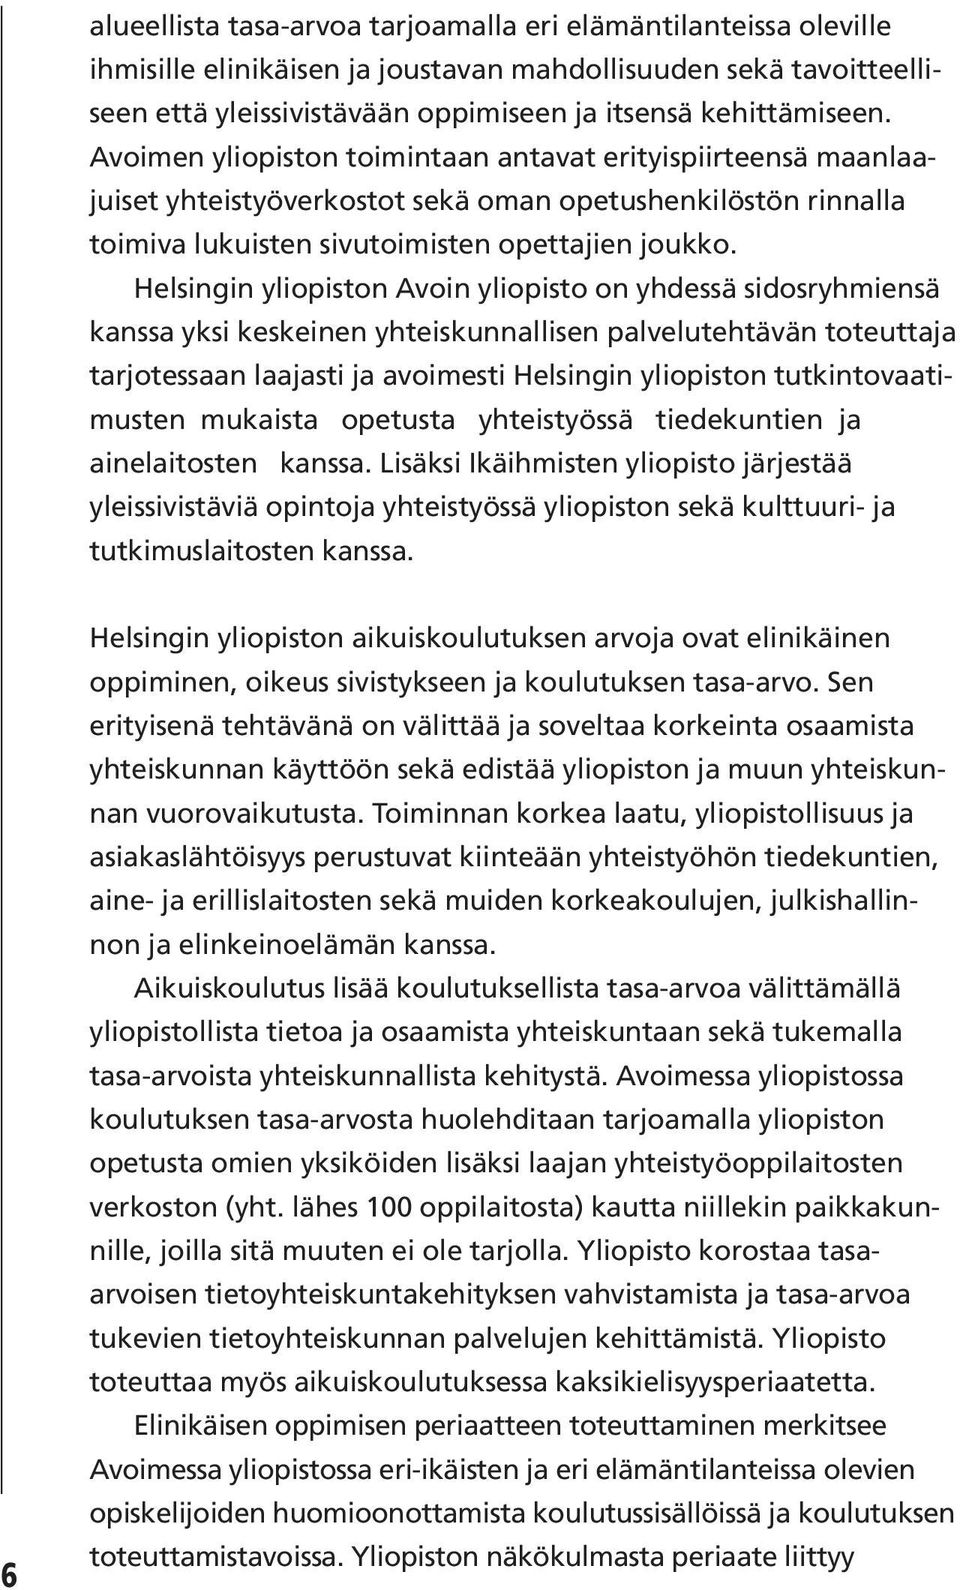 Helsingin yliopiston Avoin yliopisto on yhdessä sidosryhmiensä kanssa yksi keskeinen yhteiskunnallisen palvelutehtävän toteuttaja tarjotessaan laajasti ja avoimesti Helsingin yliopiston